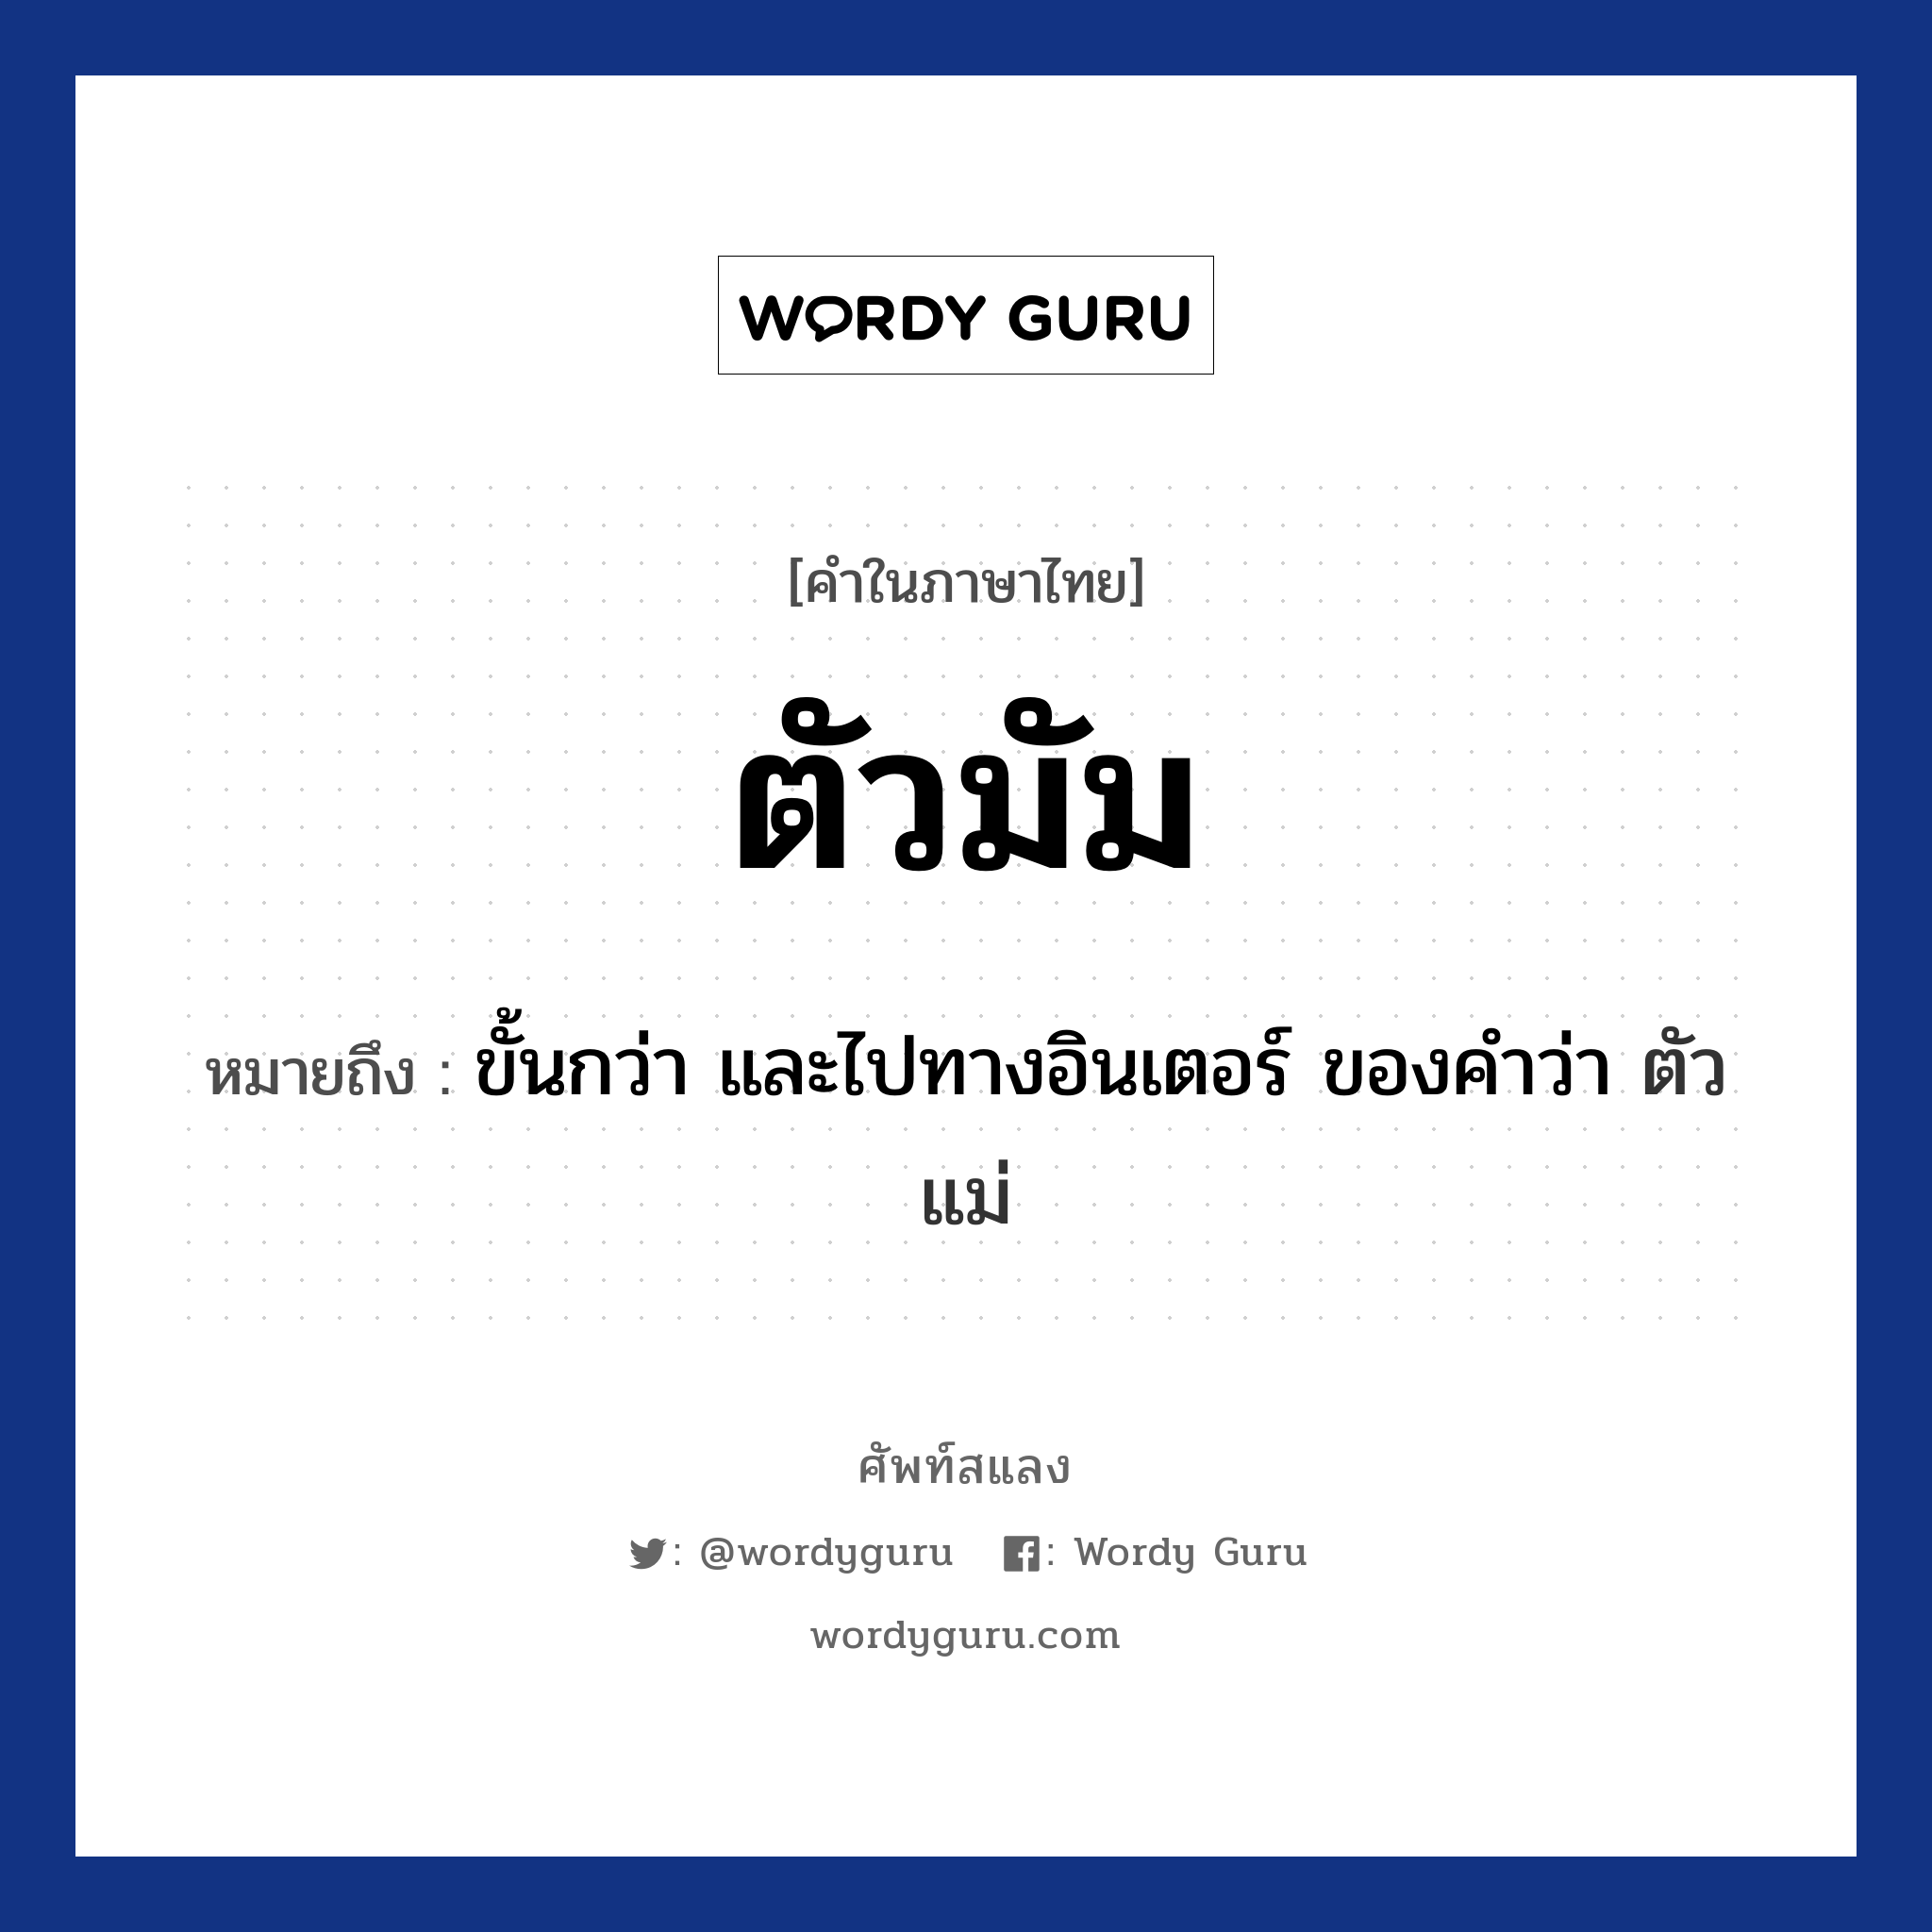 ตัวมัม หมายถึงอะไร?, คำไทย ตัวมัม คำในภาษาไทย ตัวมัม หมายถึง ขั้นกว่า และไปทางอินเตอร์ ของคำว่า ตัวแม่ ประเภท คำนาม หมวด คำนาม